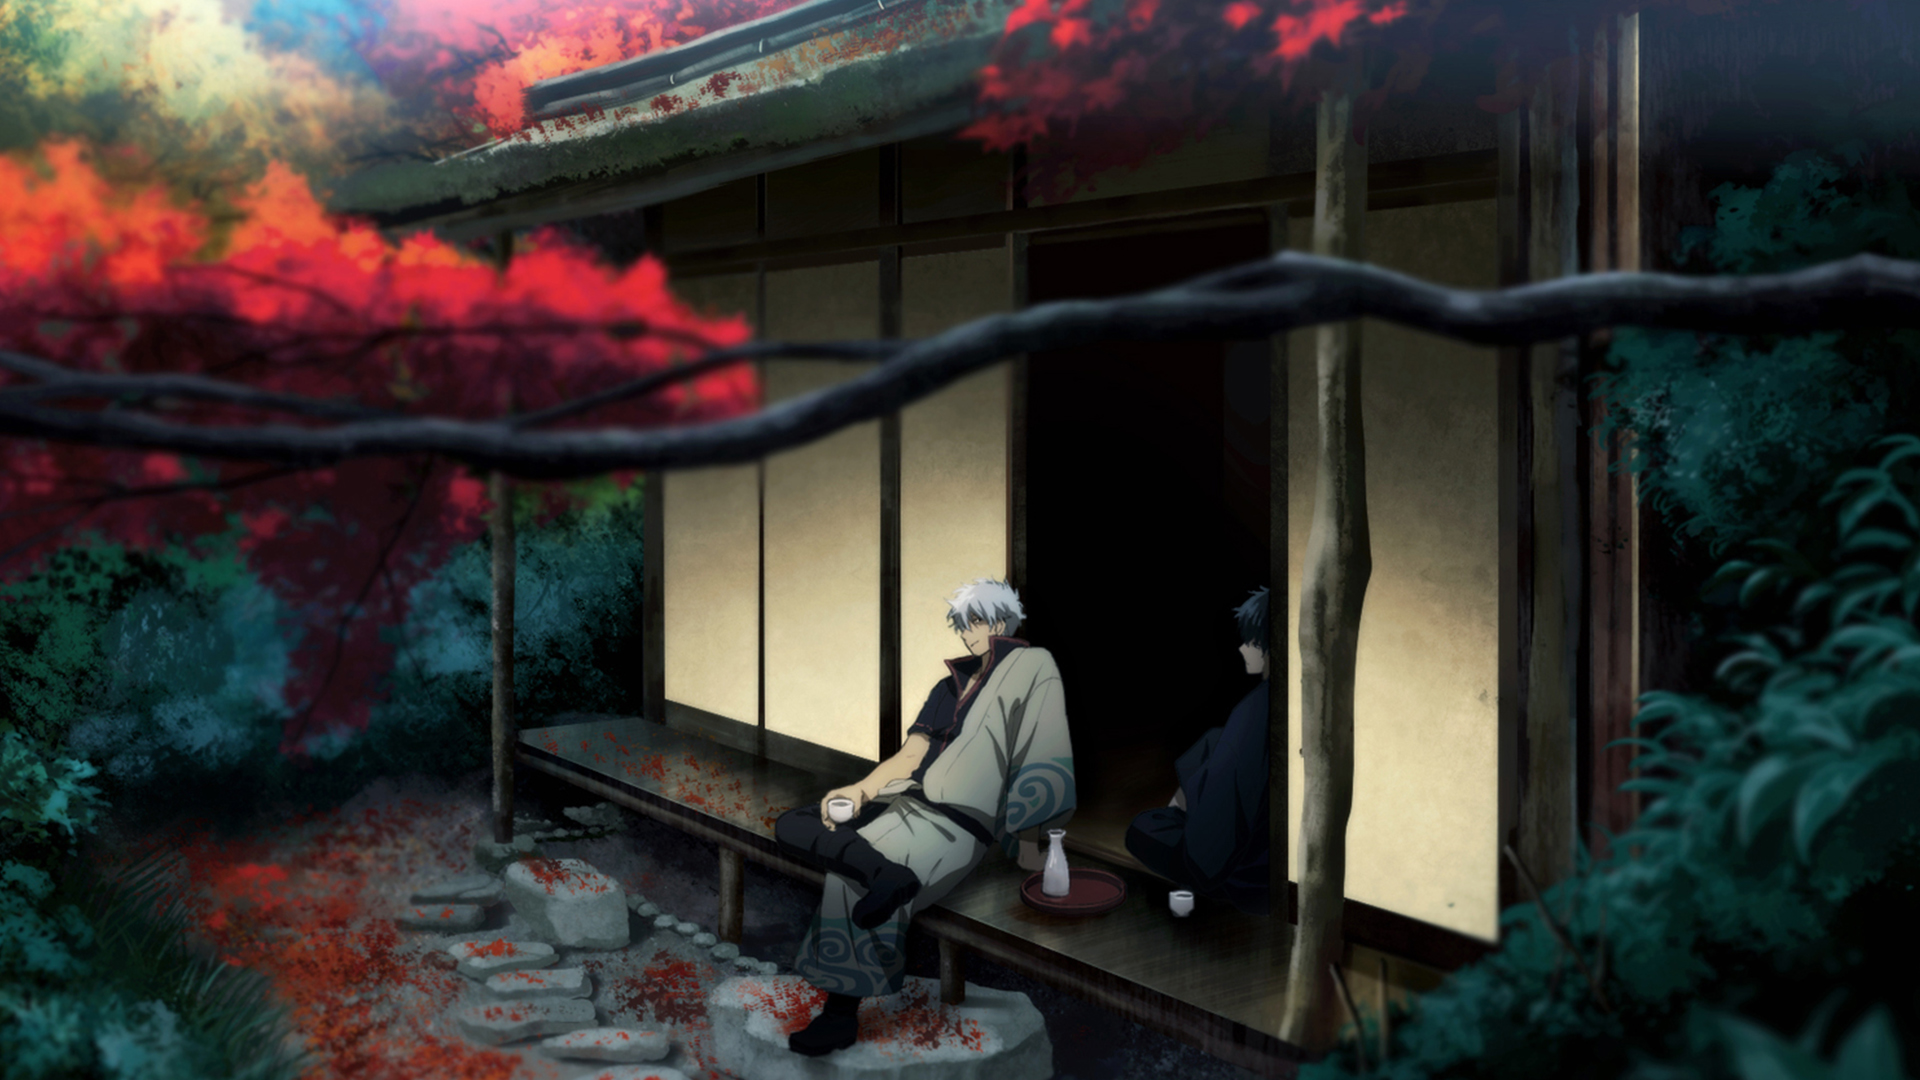 Free download wallpaper Anime, Gintama, Gintoki Sakata on your PC desktop